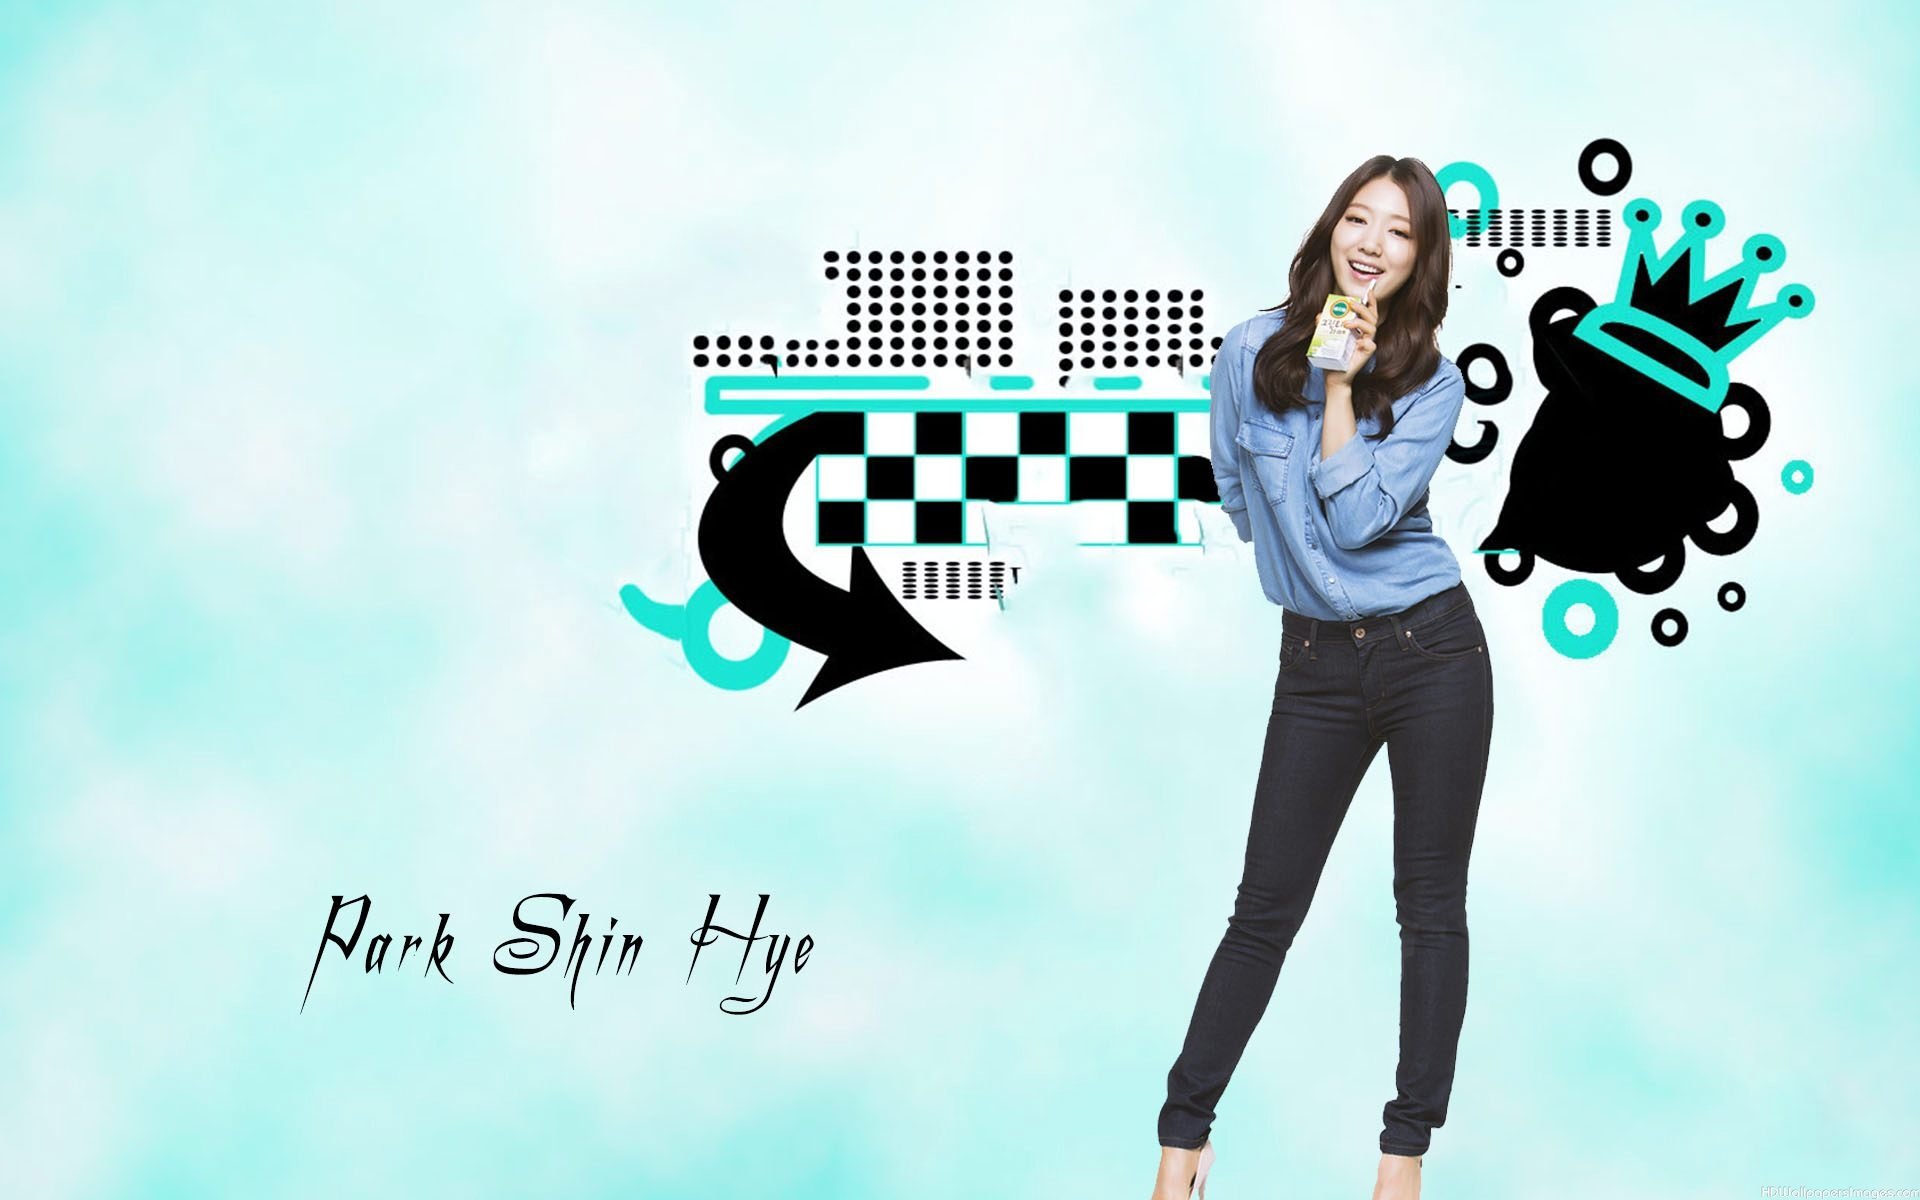 Park Shin Hye - Park Shin Hye Wallpaper (38464657) - Fanpop